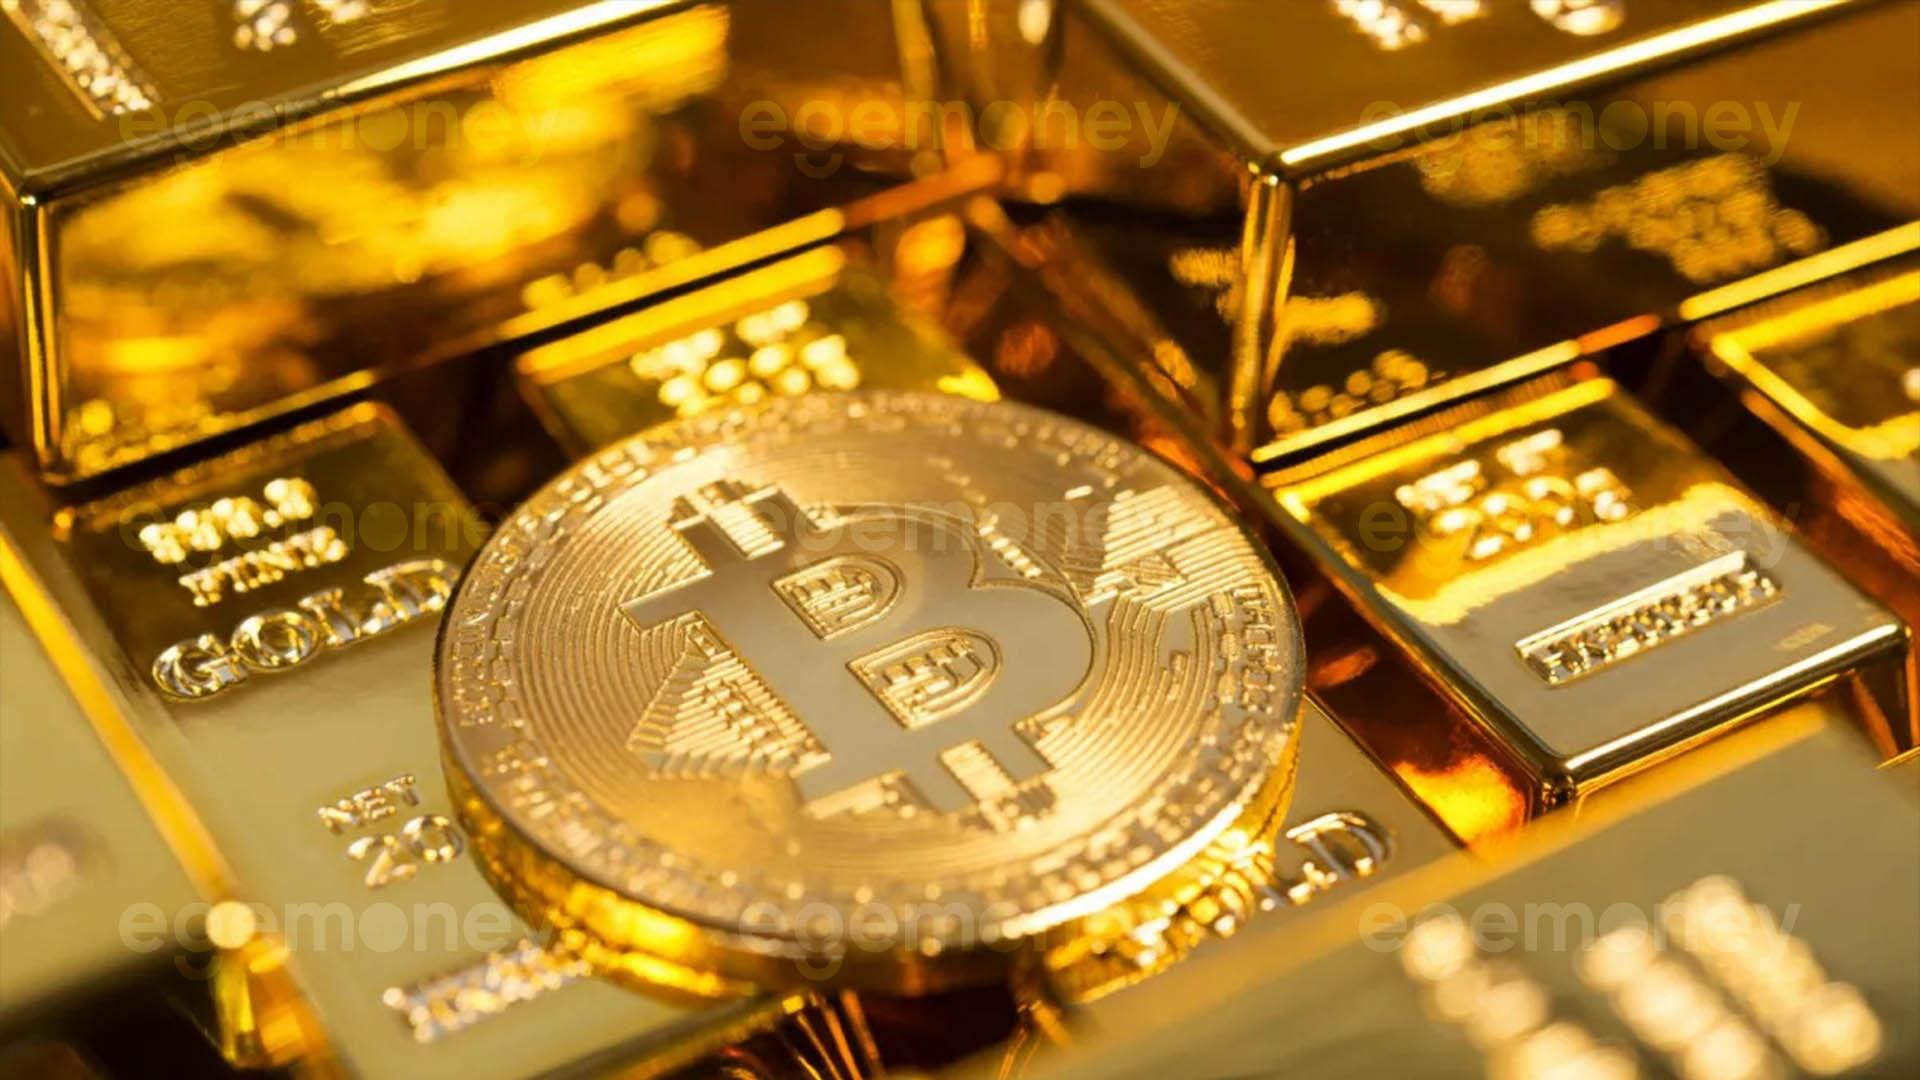 Matrixport, Bitcoin’in Dijital Altından Daha İyi Olduğunu Belirtiyor